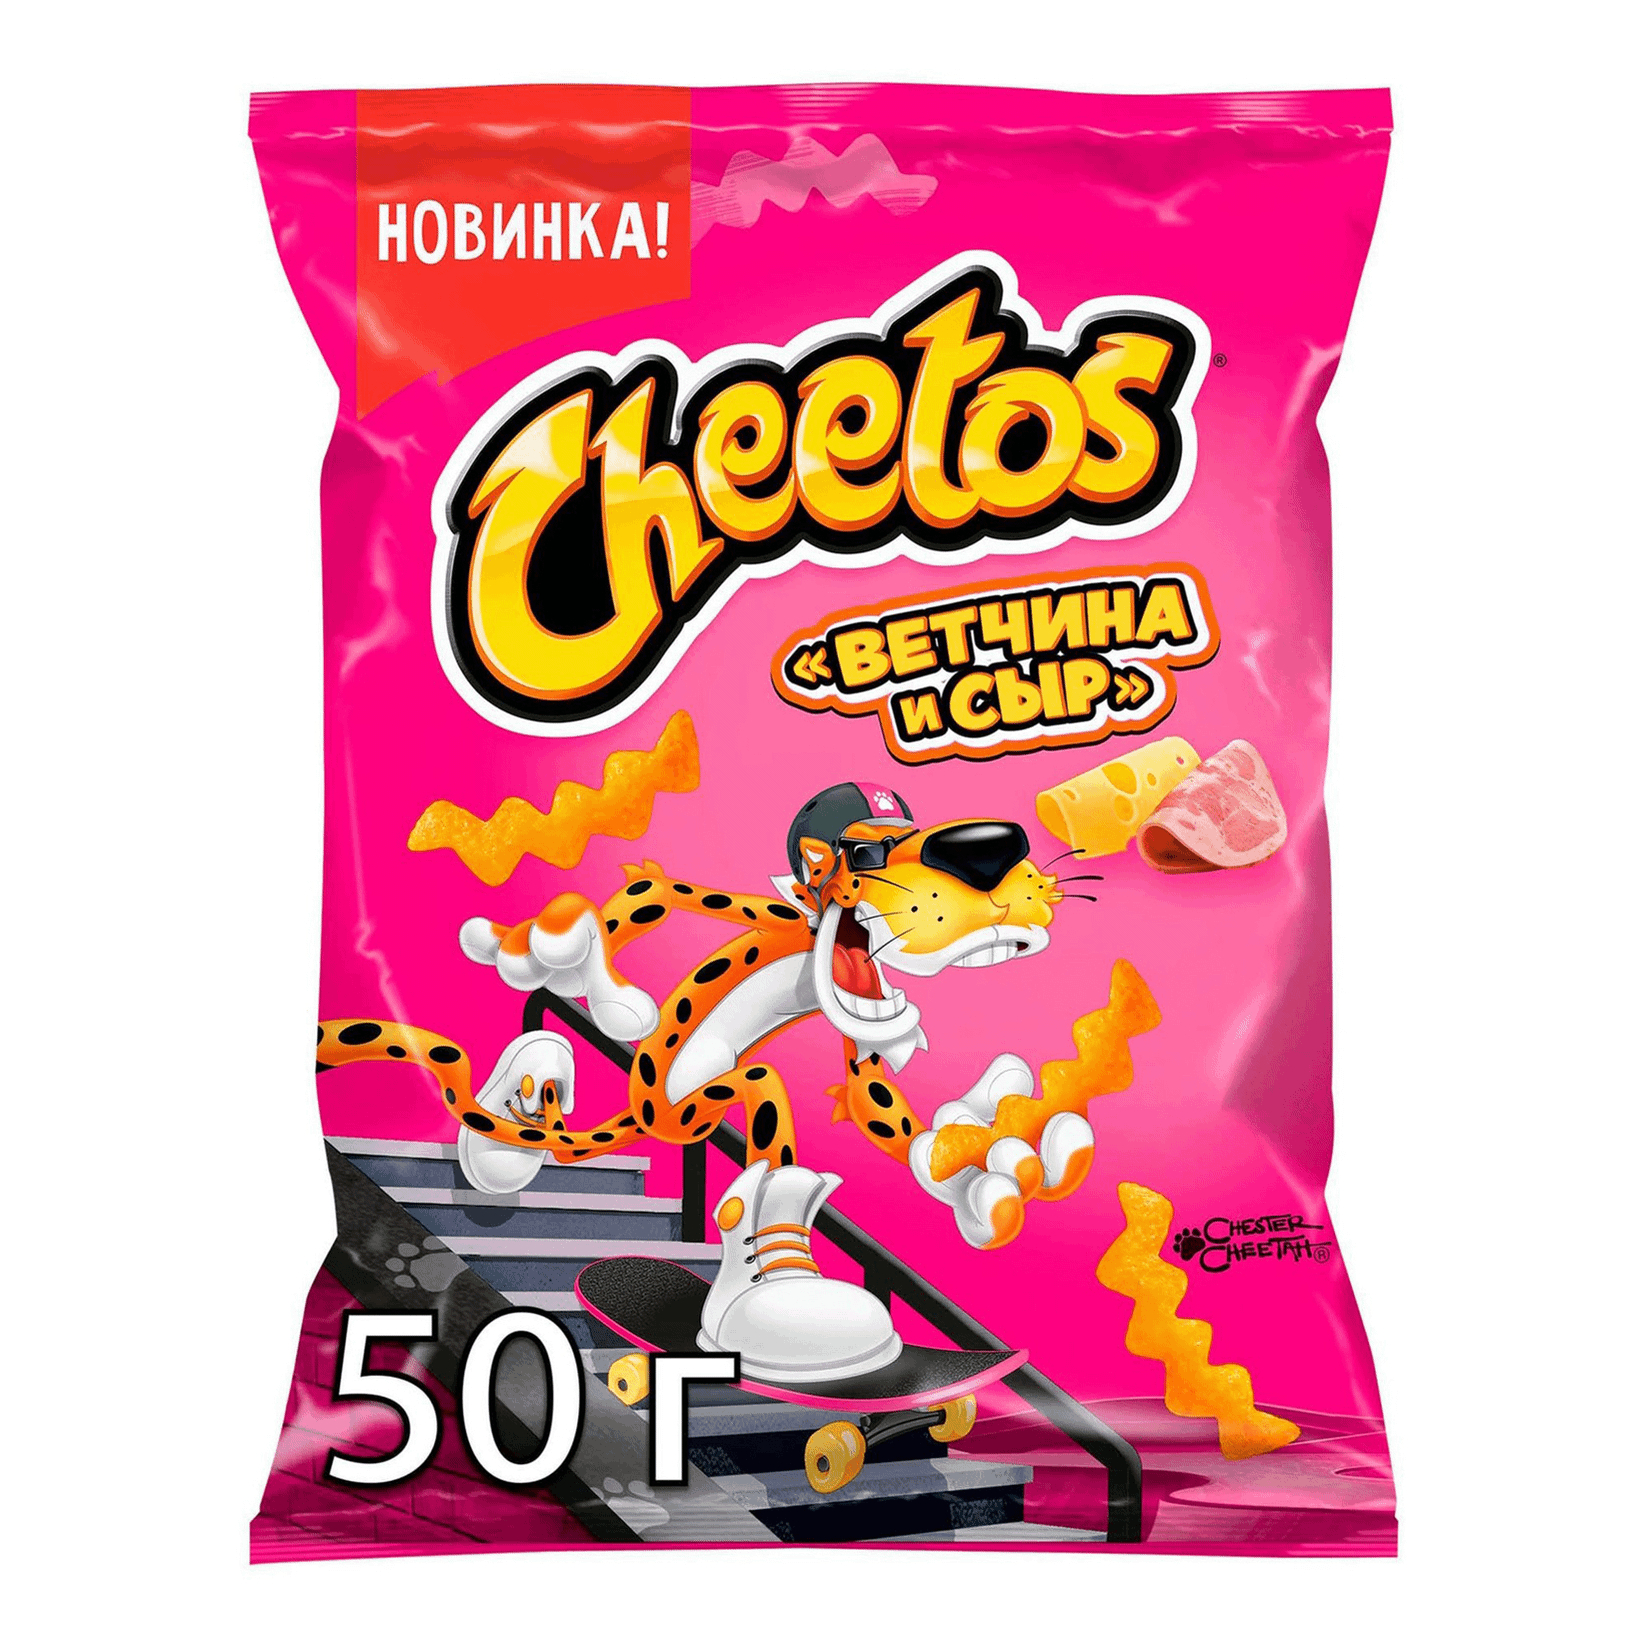 Чипсы кукурузные Cheetos Ветчина и сыр 50 г кукурузные палочки читос 50 г сыр